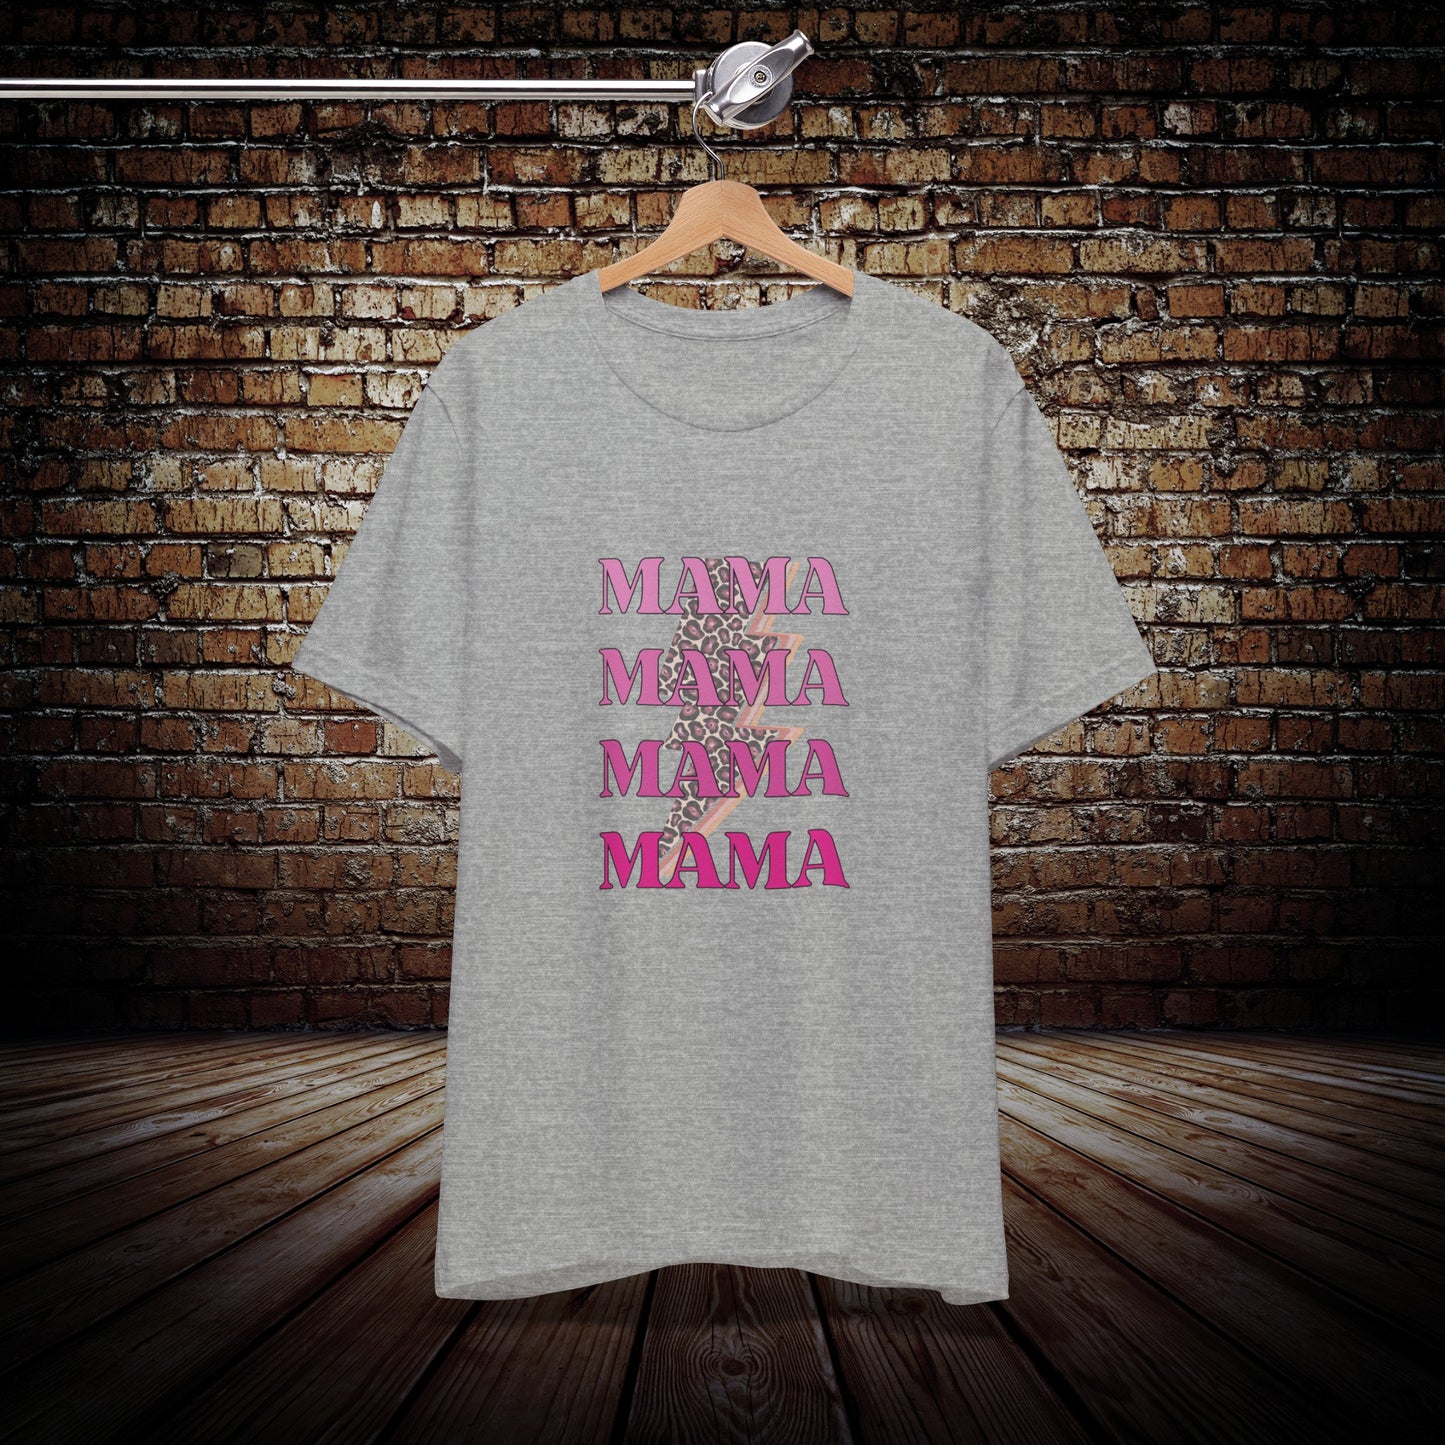 Mama lightning bolt trendy t-shirt